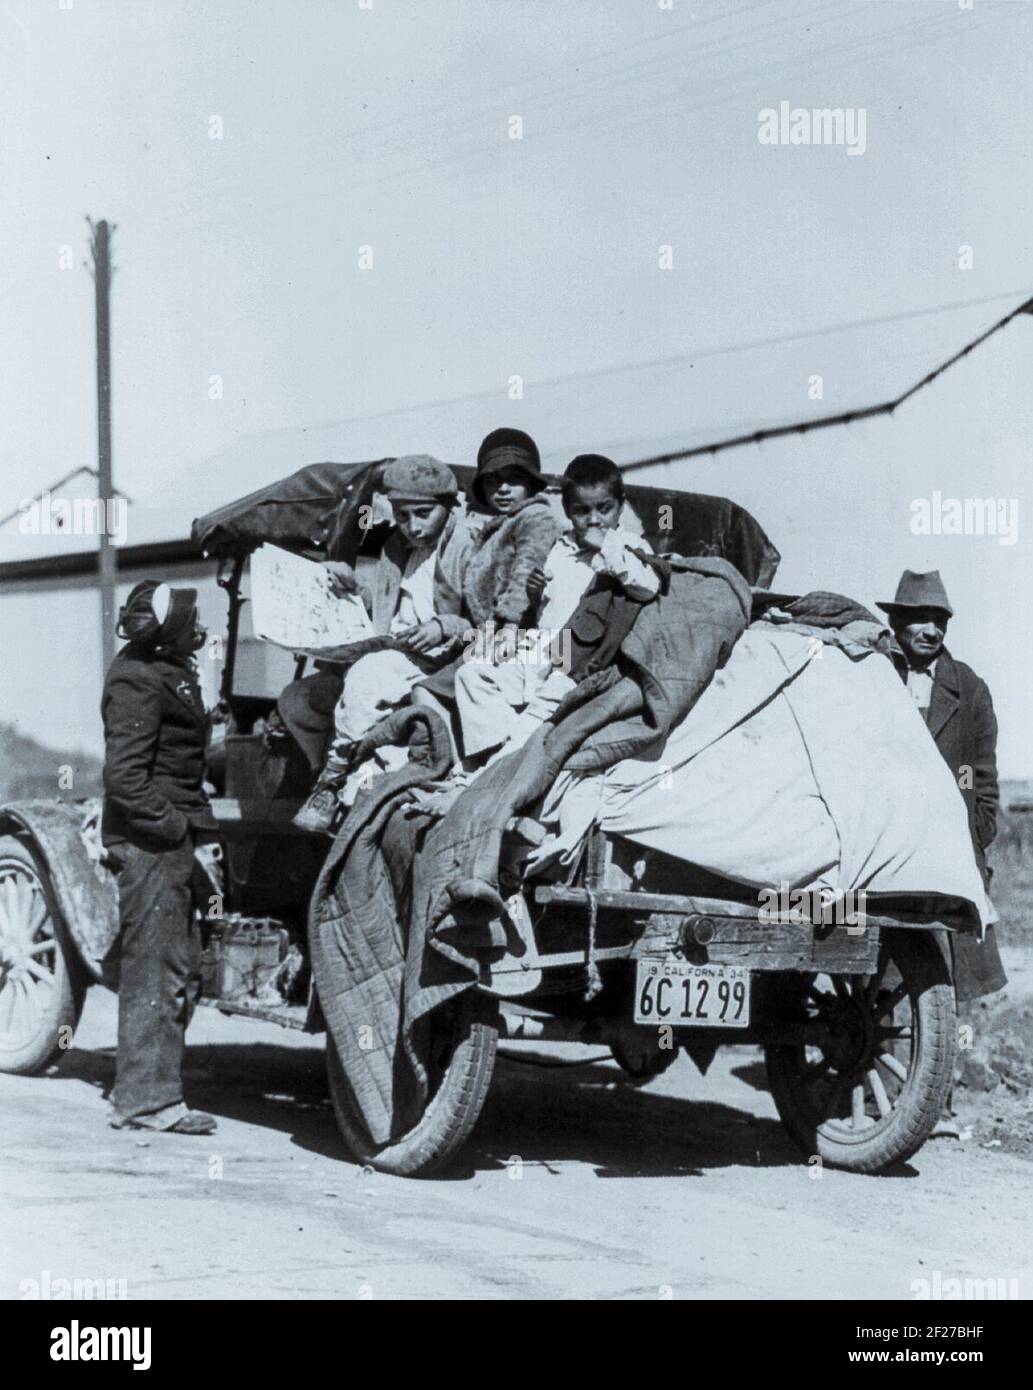 Per raccogliere i raccolti della California migliaia di famiglie vivono letteralmente su ruote, San Joaquin Valley. La fotografia mostra i bambini seduti sopra gli oggetti di famiglia accumulati sul retro di un autocarro con pianale; due uomini sono in piedi ai lati del camion. 22 febbraio 1935. Fotografia di Dorothea Lange Foto Stock